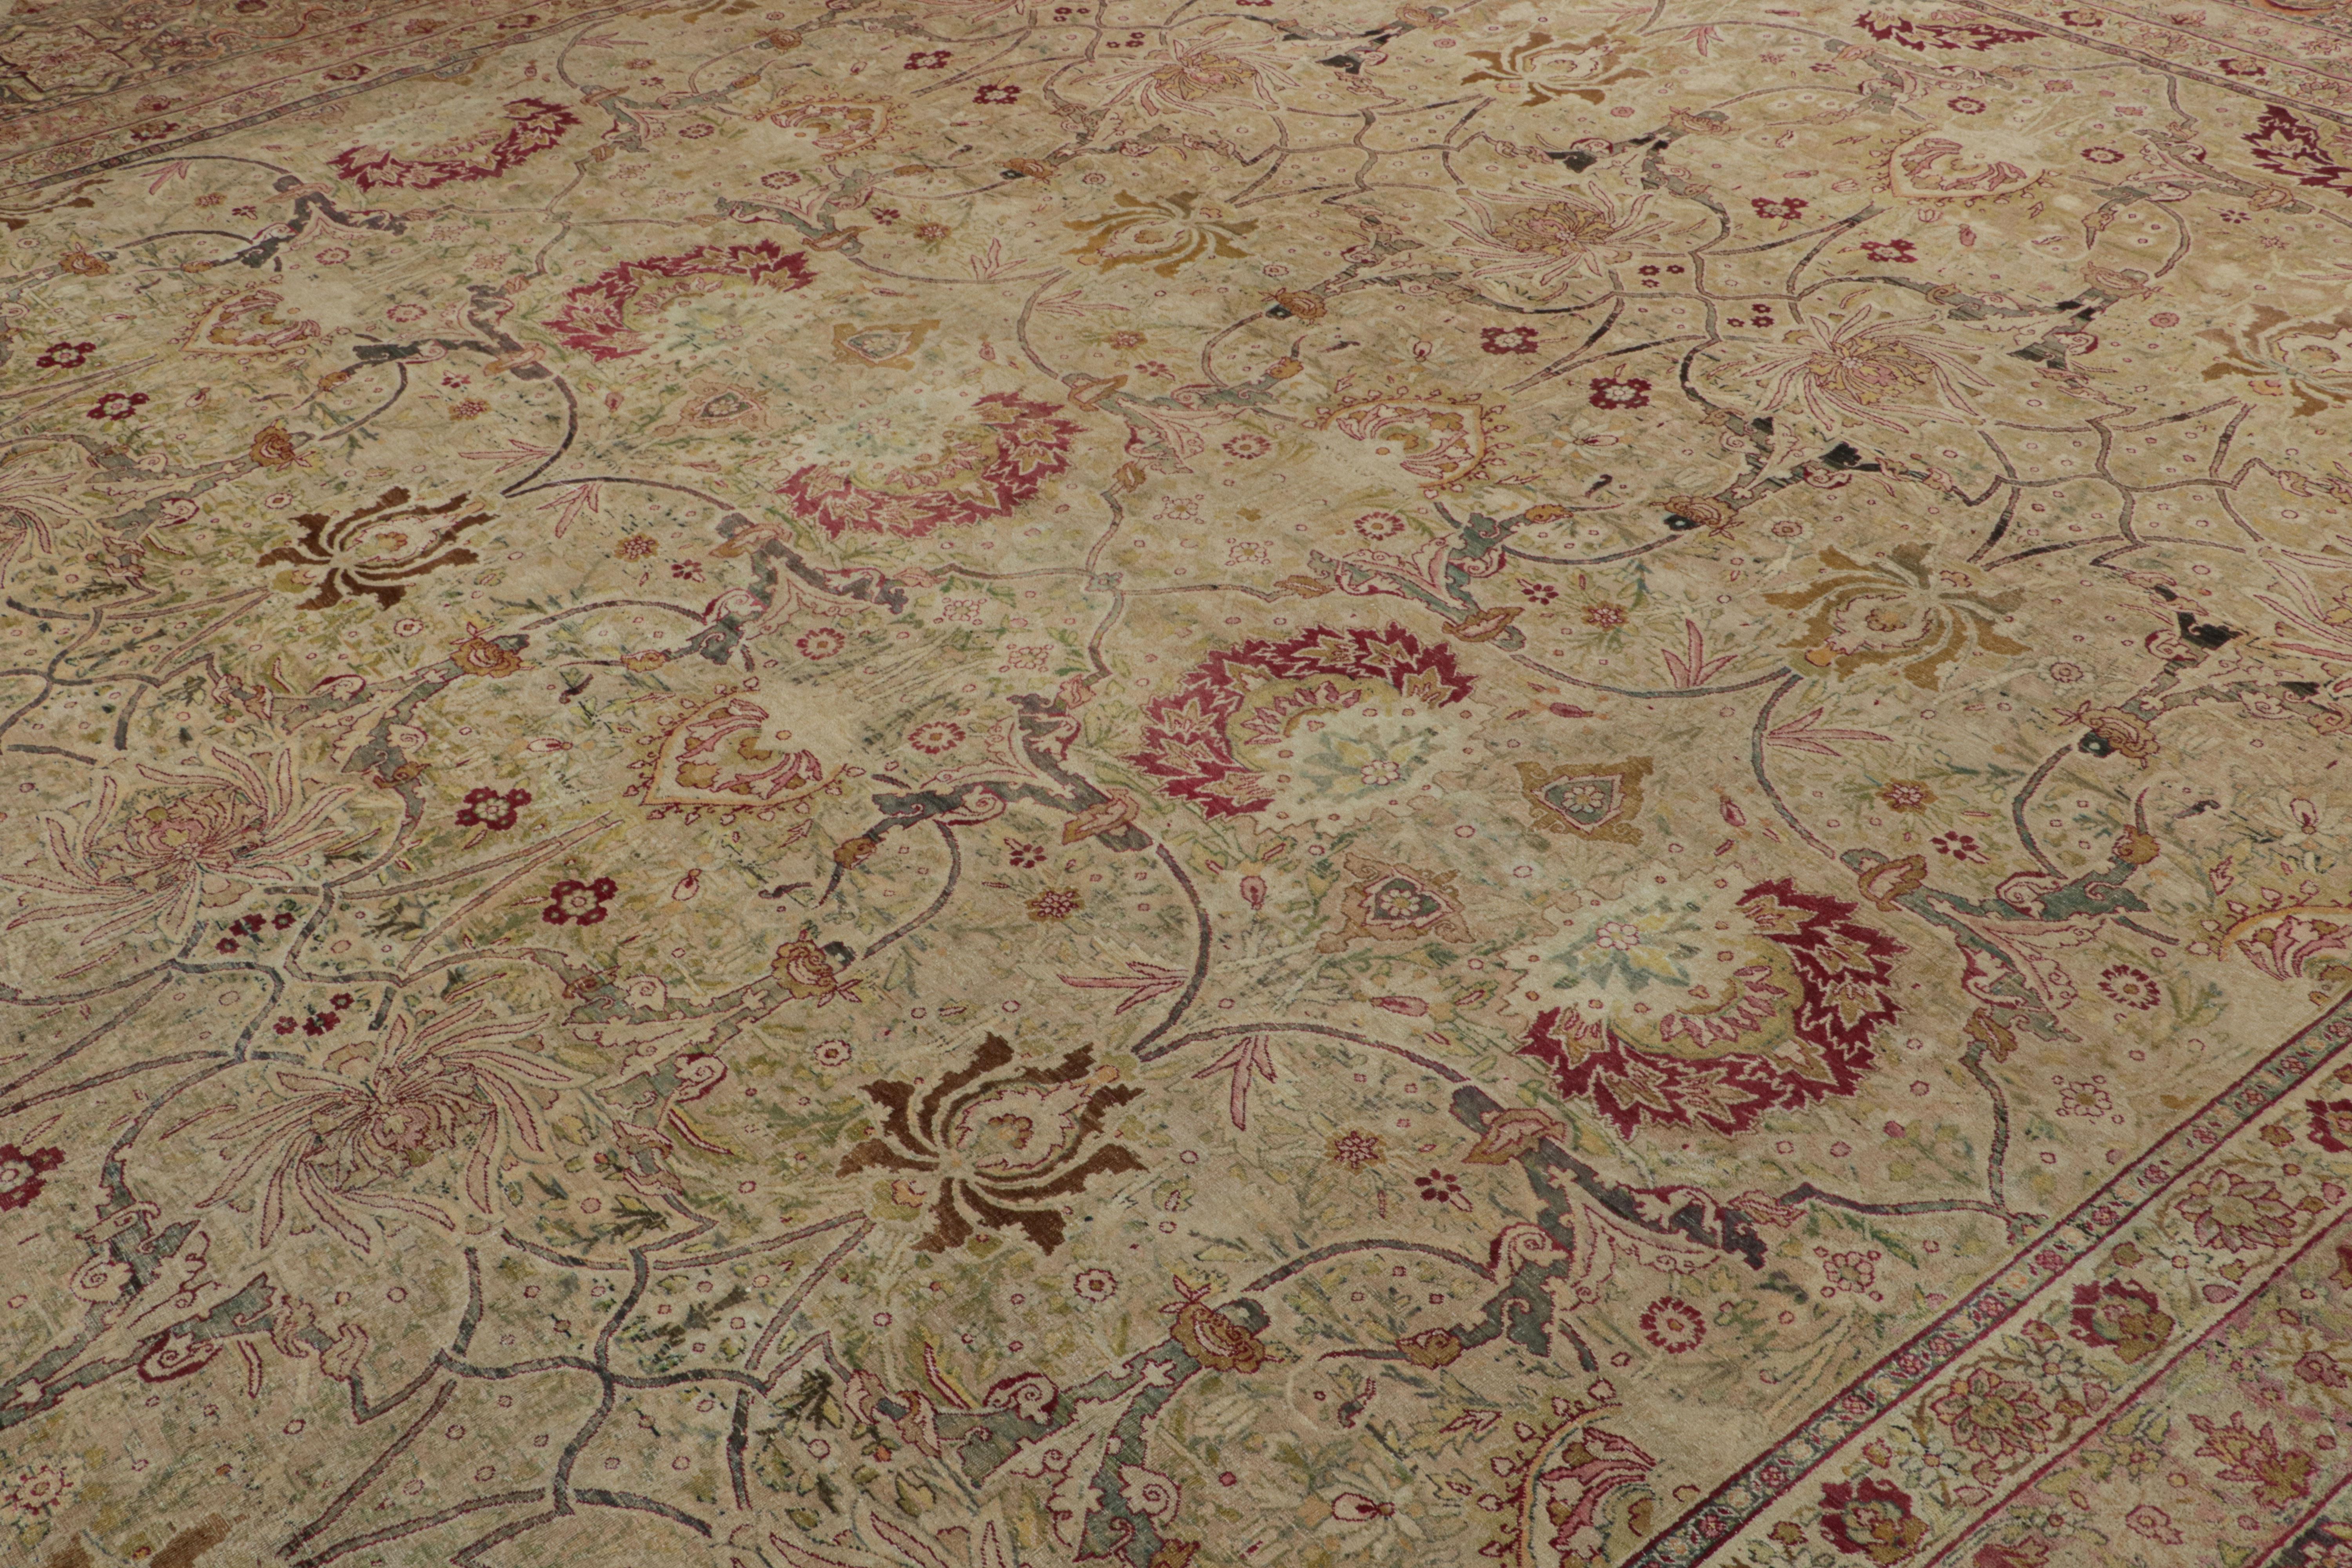 Dieser 15x18 große antike Perserteppich aus Wolle, handgeknüpft um 1920-1930, ist eine besonders spannende und seltene Kuration von Kerman Lavar. 

Über das Design:

Obwohl die polychromen Farbgebungen das florale Muster unterstreichen, werden